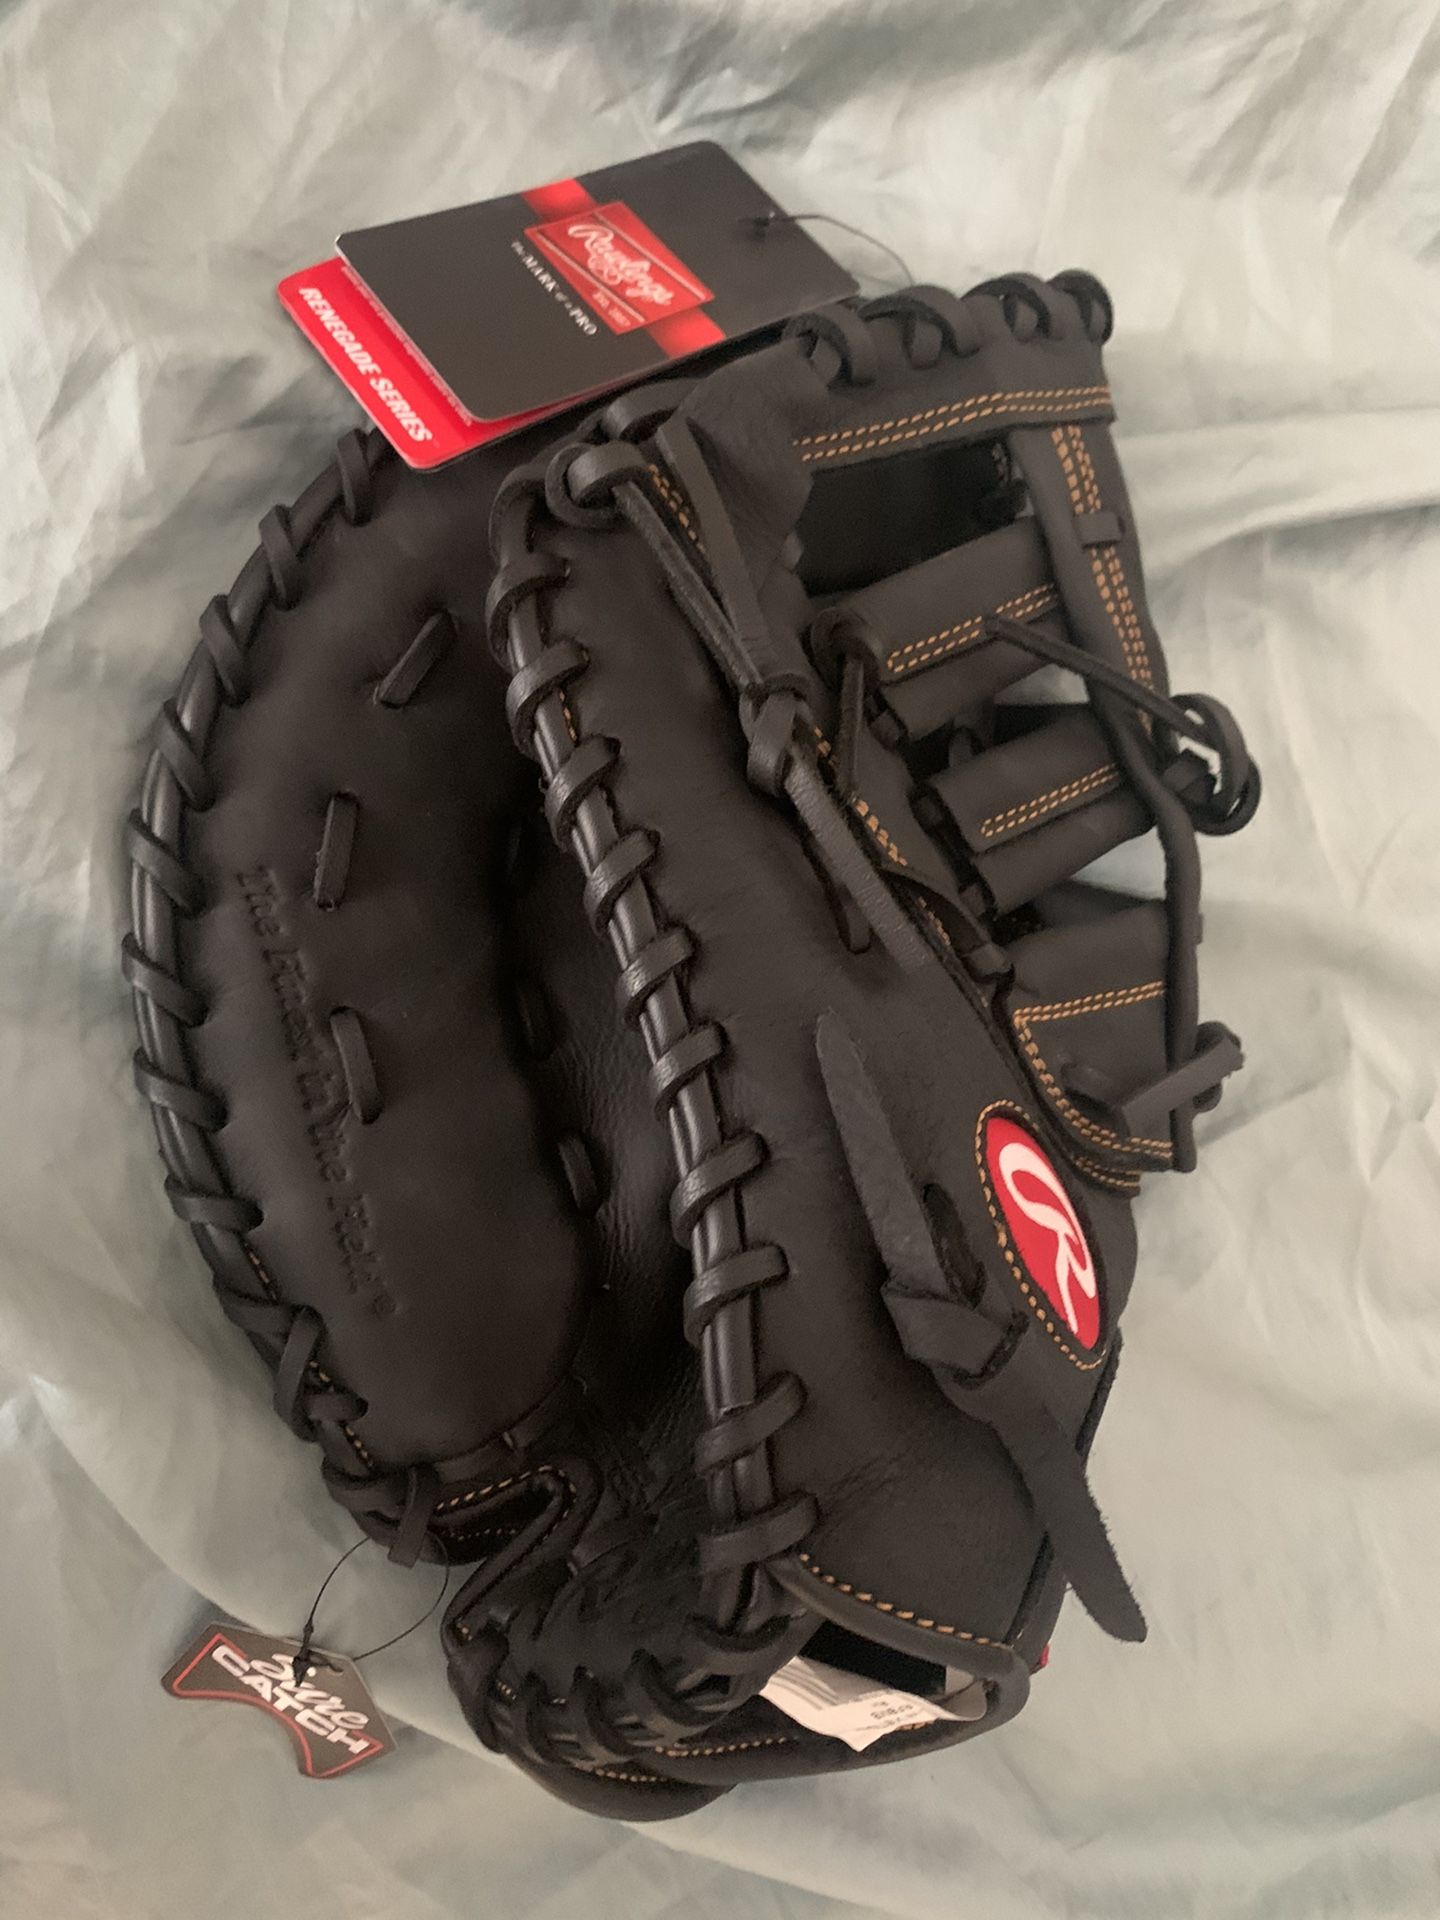 Brand New with tags 12.5” baseball/softball first baseman glove